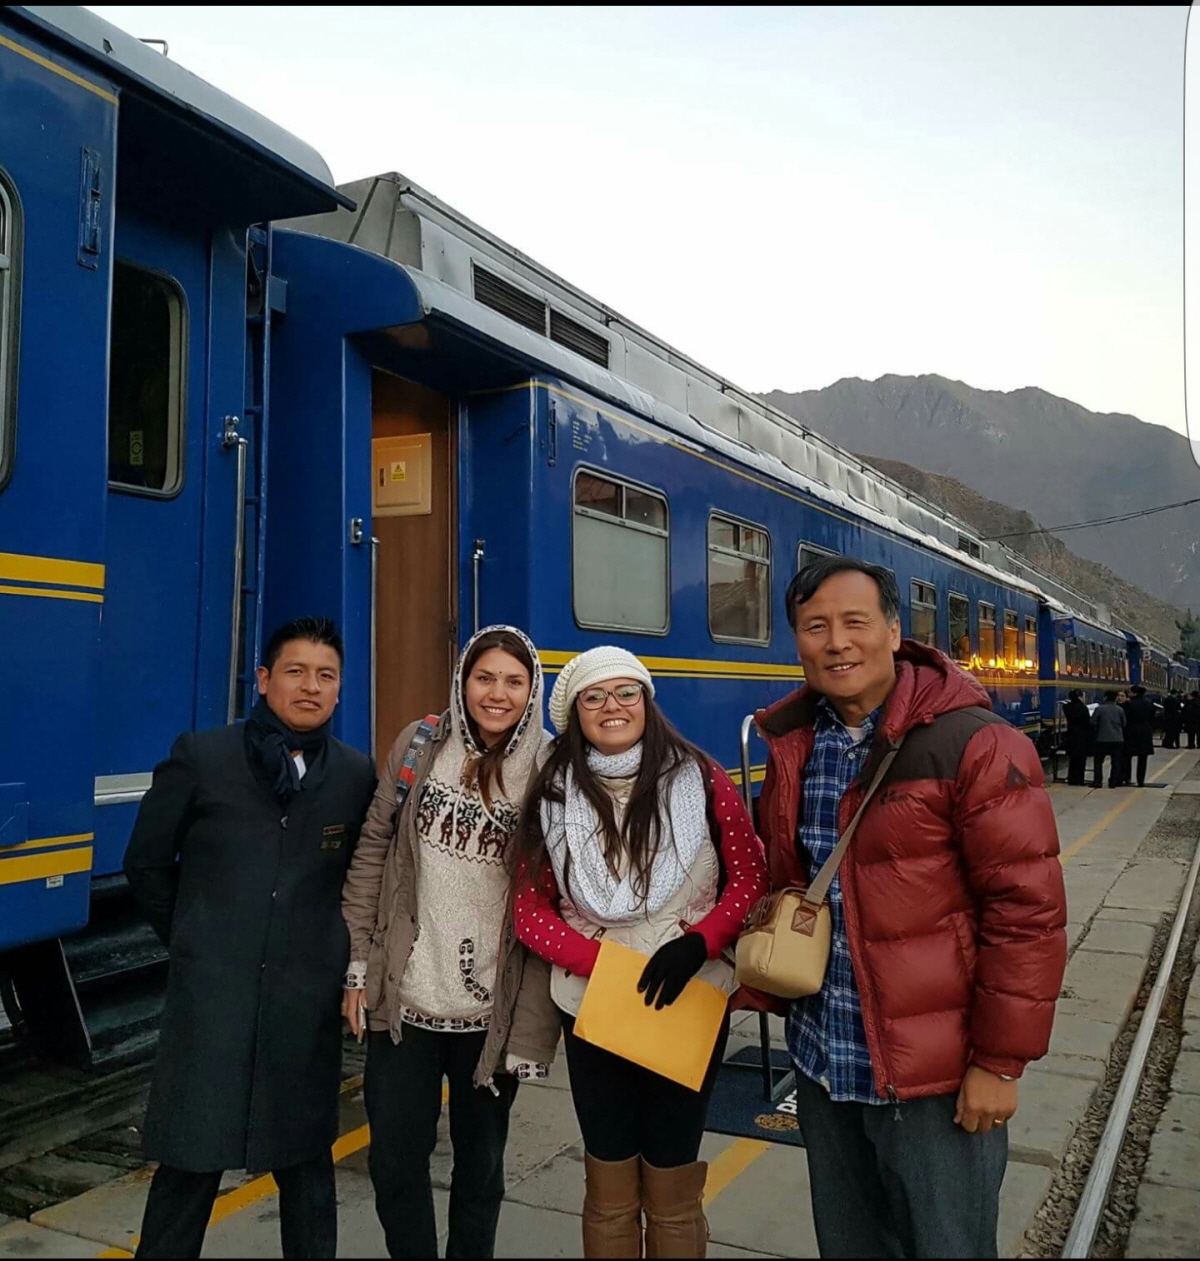 마추피추 가는 기차 앞에서 필자, 브라질, 아르헨티나 배낭여행객, 페루역무원. 두 미녀 여성과는 기차를 기다리며 카페에서 커피를 마시다가 친해졌다. 